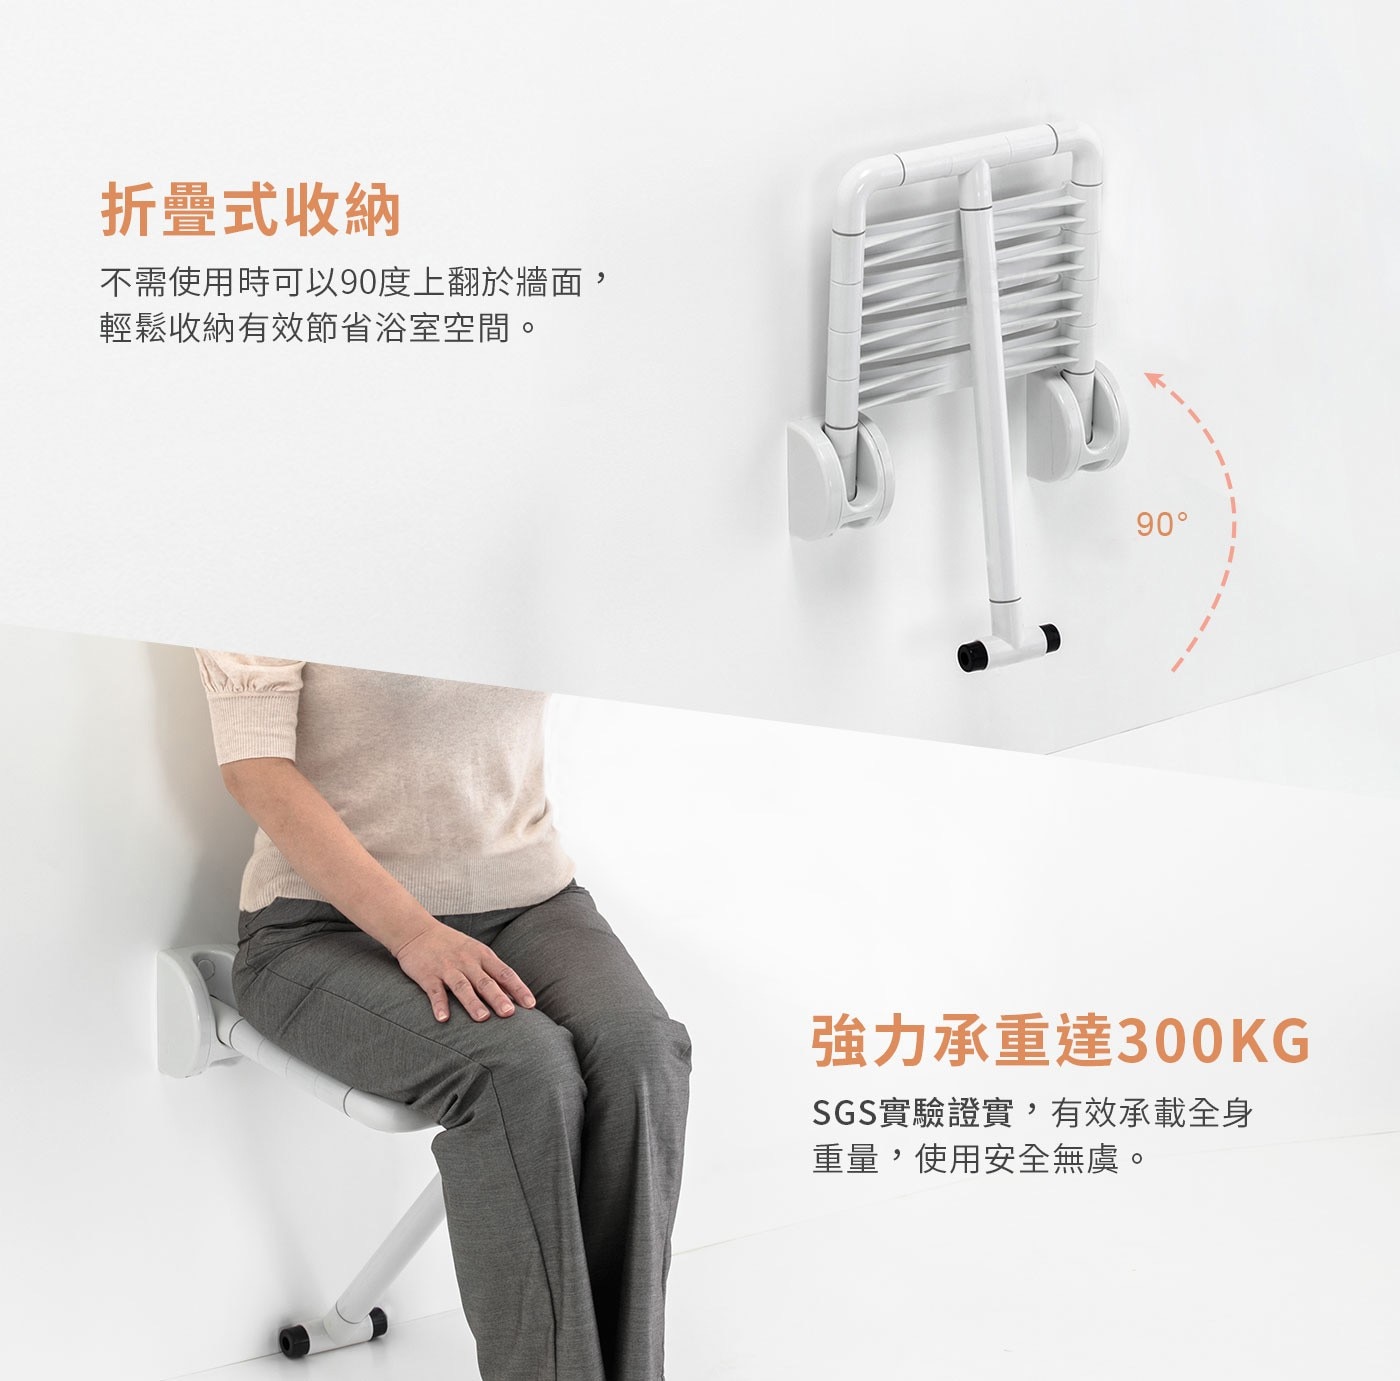 itai一太上翻淋浴座椅，浴廁安全輔具，承重300KG，台灣SGS檢驗認證，安穩坐享沐浴時光，加強防滑紋設計、超寬椅面設計，使坐下時身體能穩定平衡，並維持舒適的姿勢。